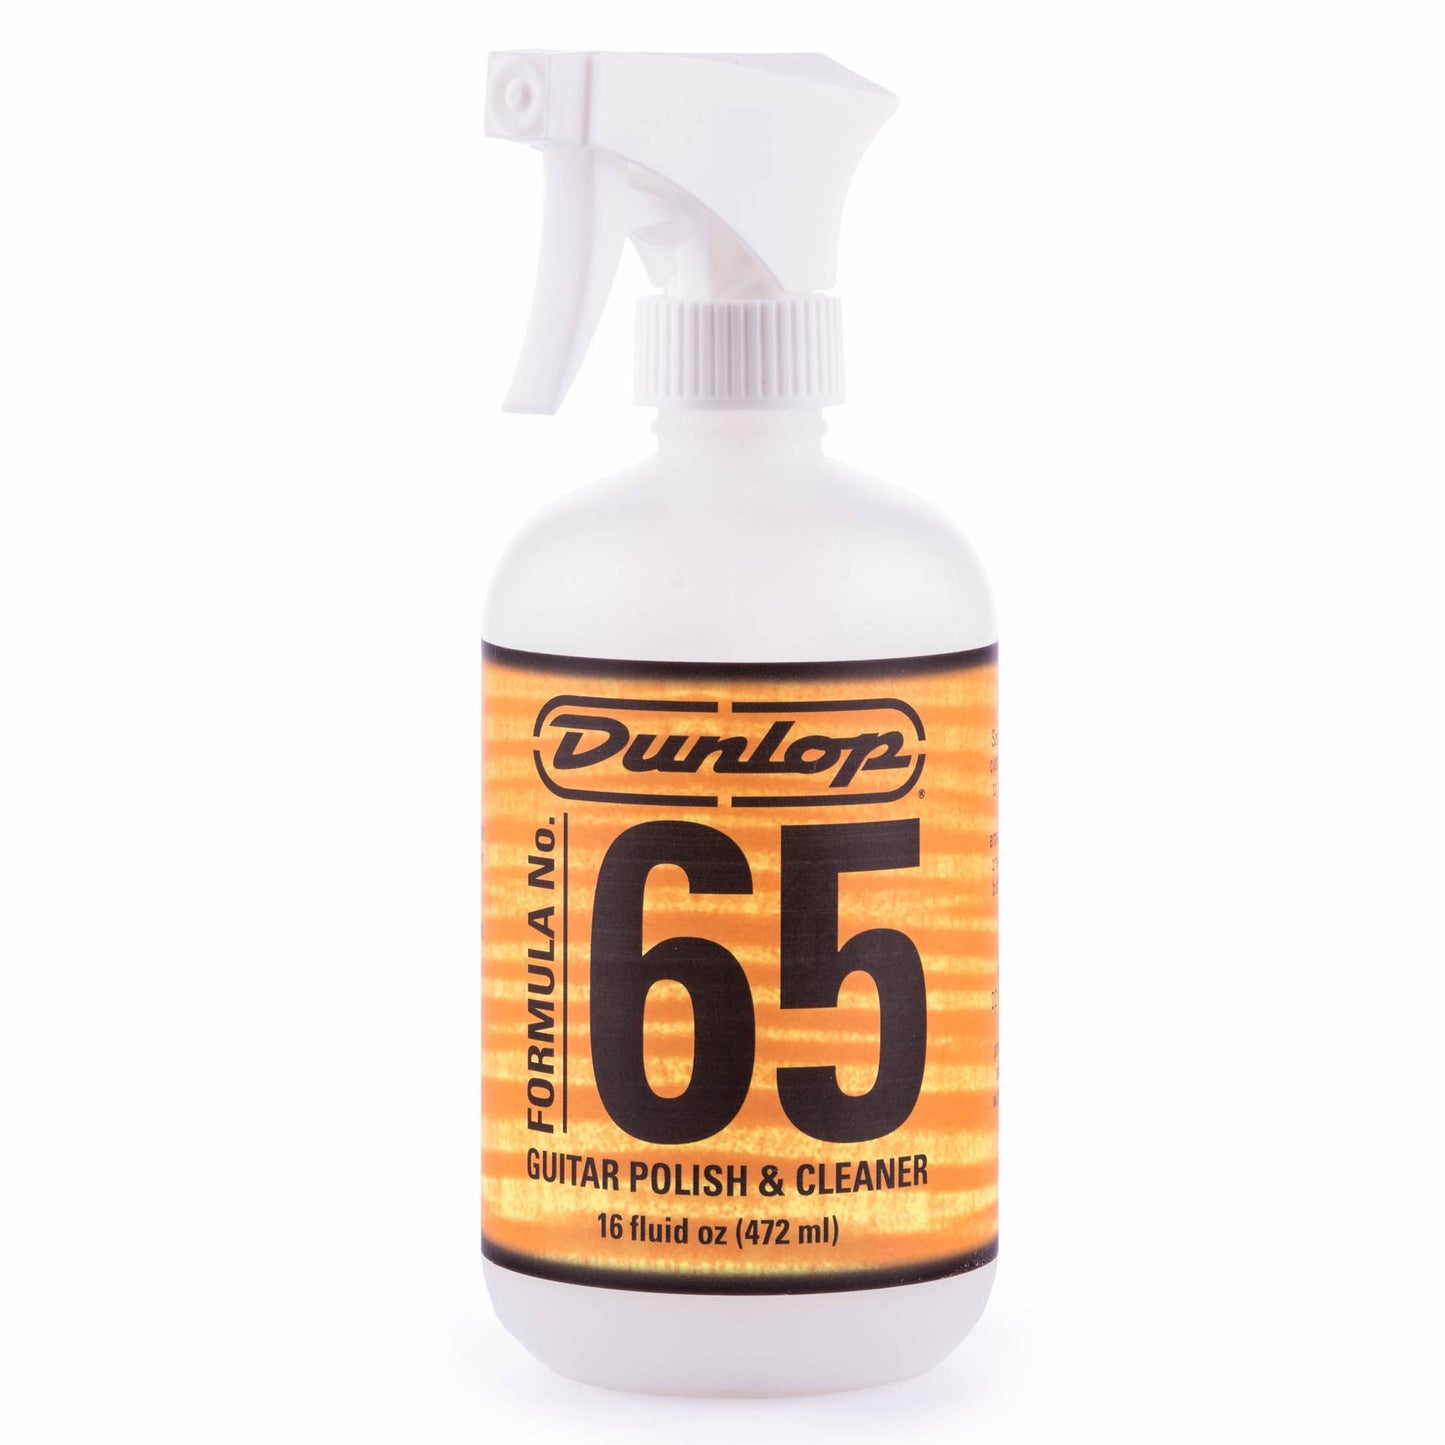 Dunlop Formula Number 65 Pump Polish and Cleaner (16 oz.)